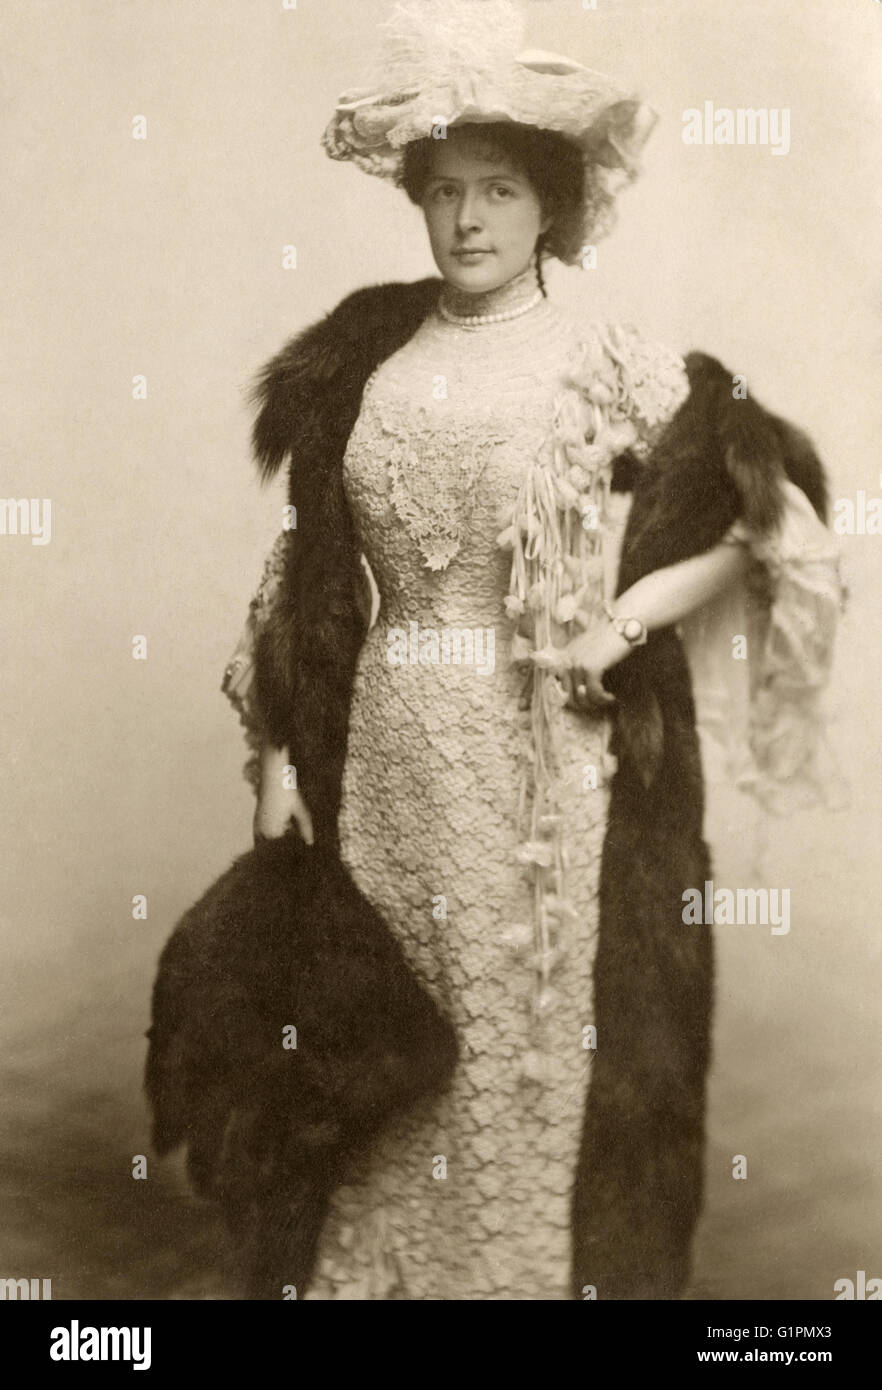 BERTHA GALLAND (1876-1932).  US-amerikanische Schauspielerin. Fotografie, 1900. Stockfoto